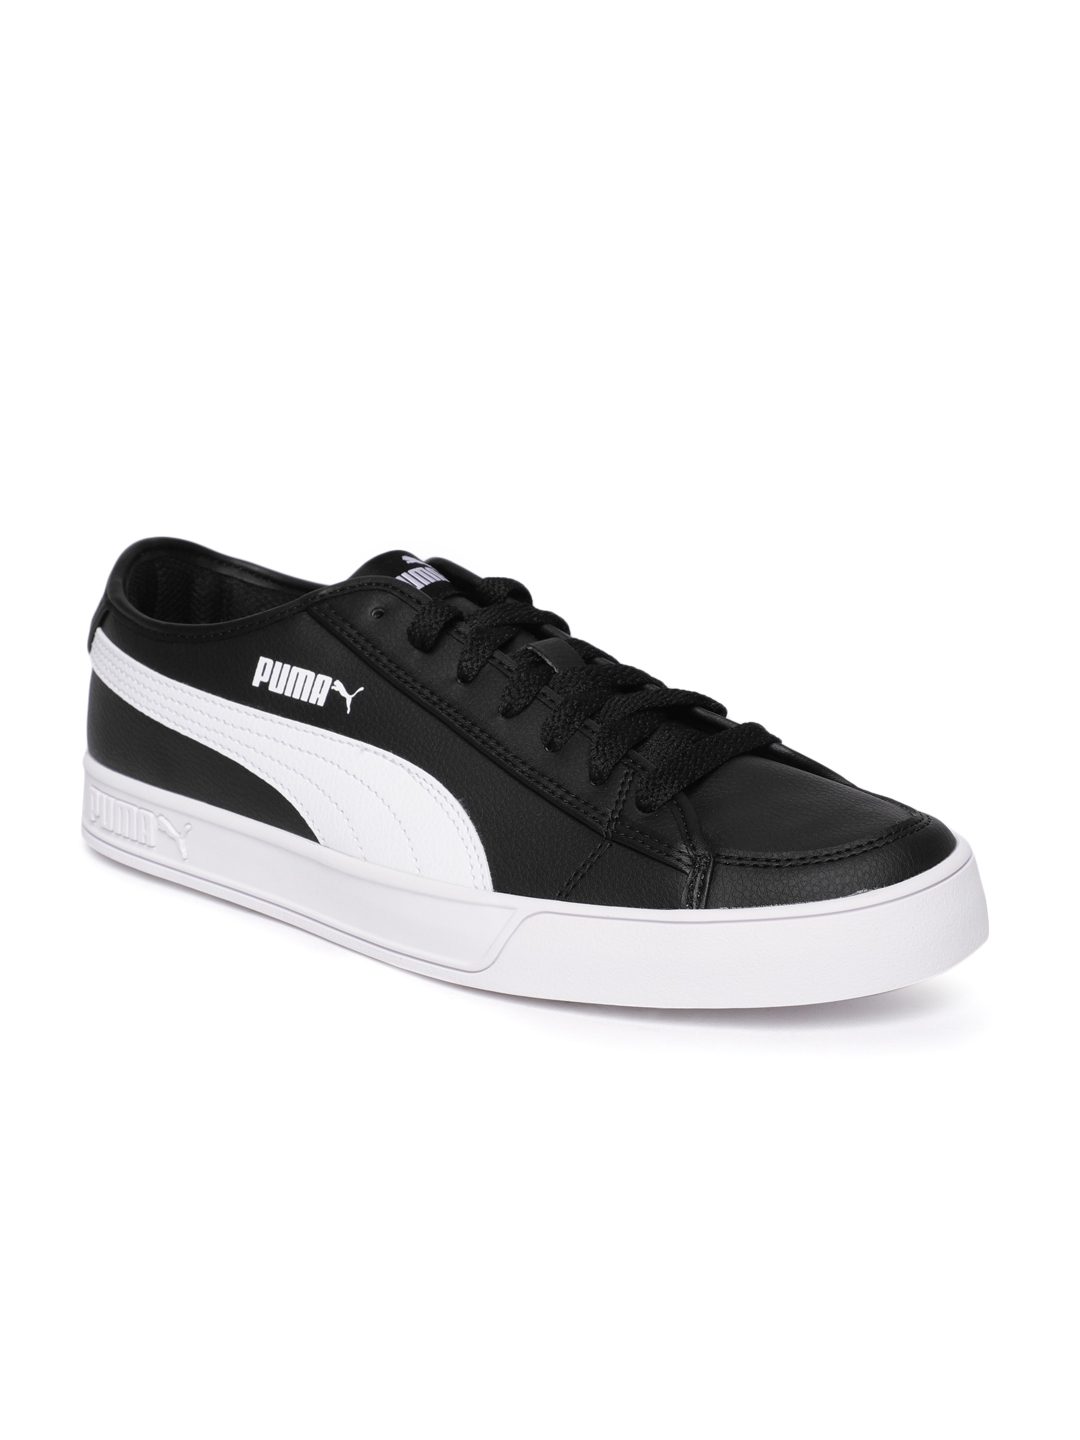 puma shoes black white